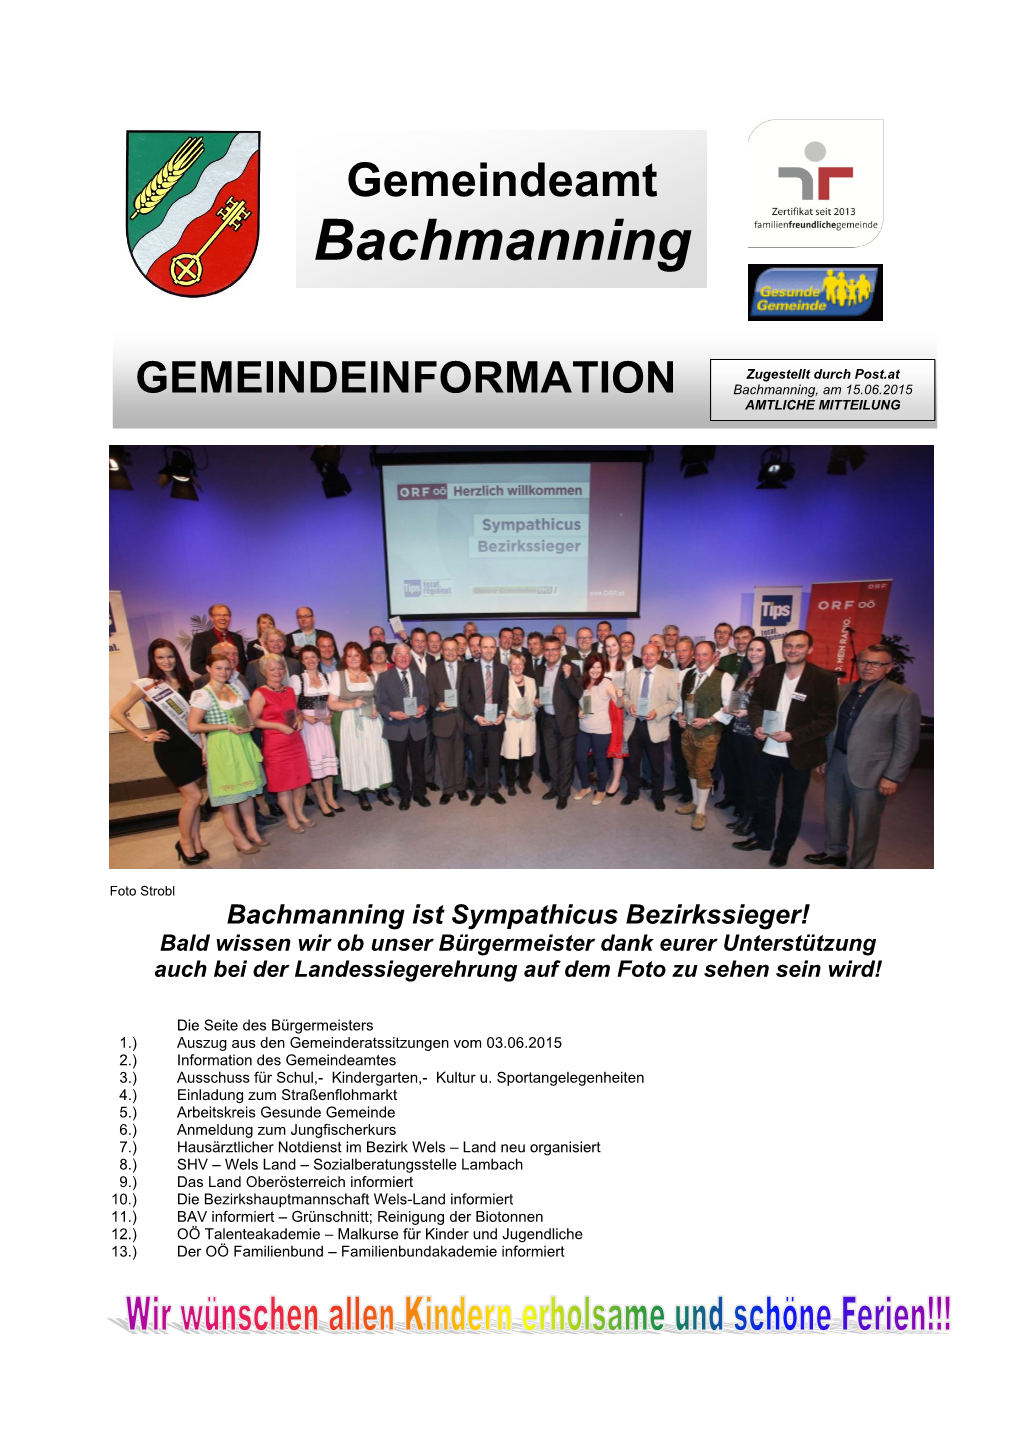 Gemeindeamt Bachmanning